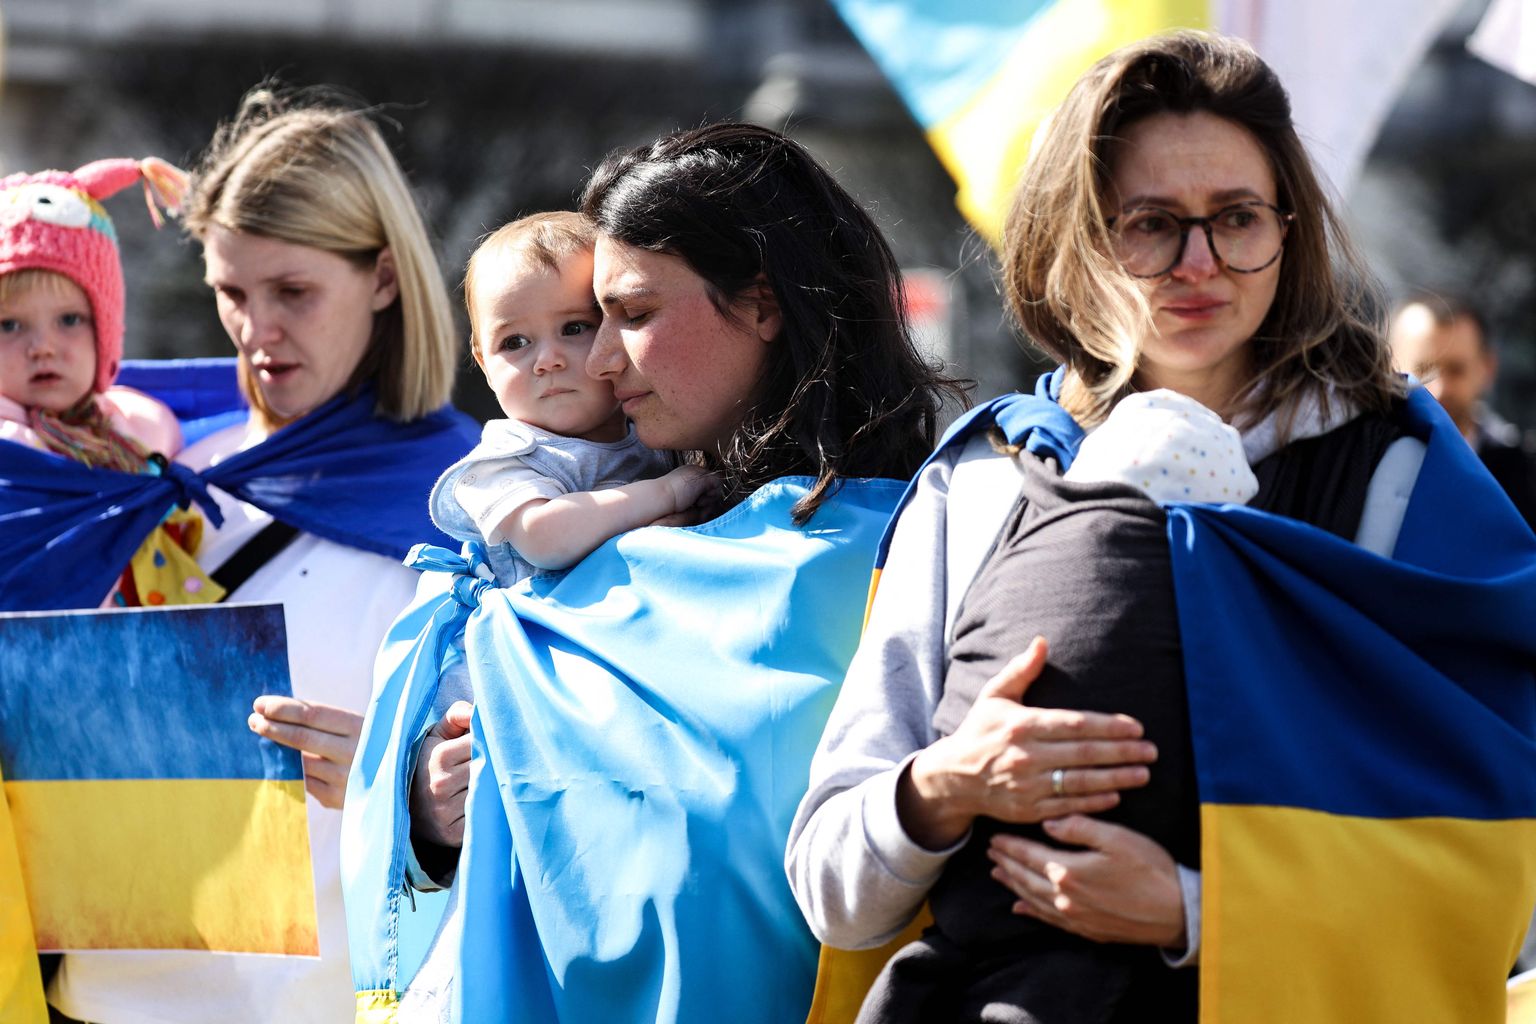 Pisarates naised lastega Ukraina toetuseks korraldatud kogunemisel. Foto on illustratiivne.